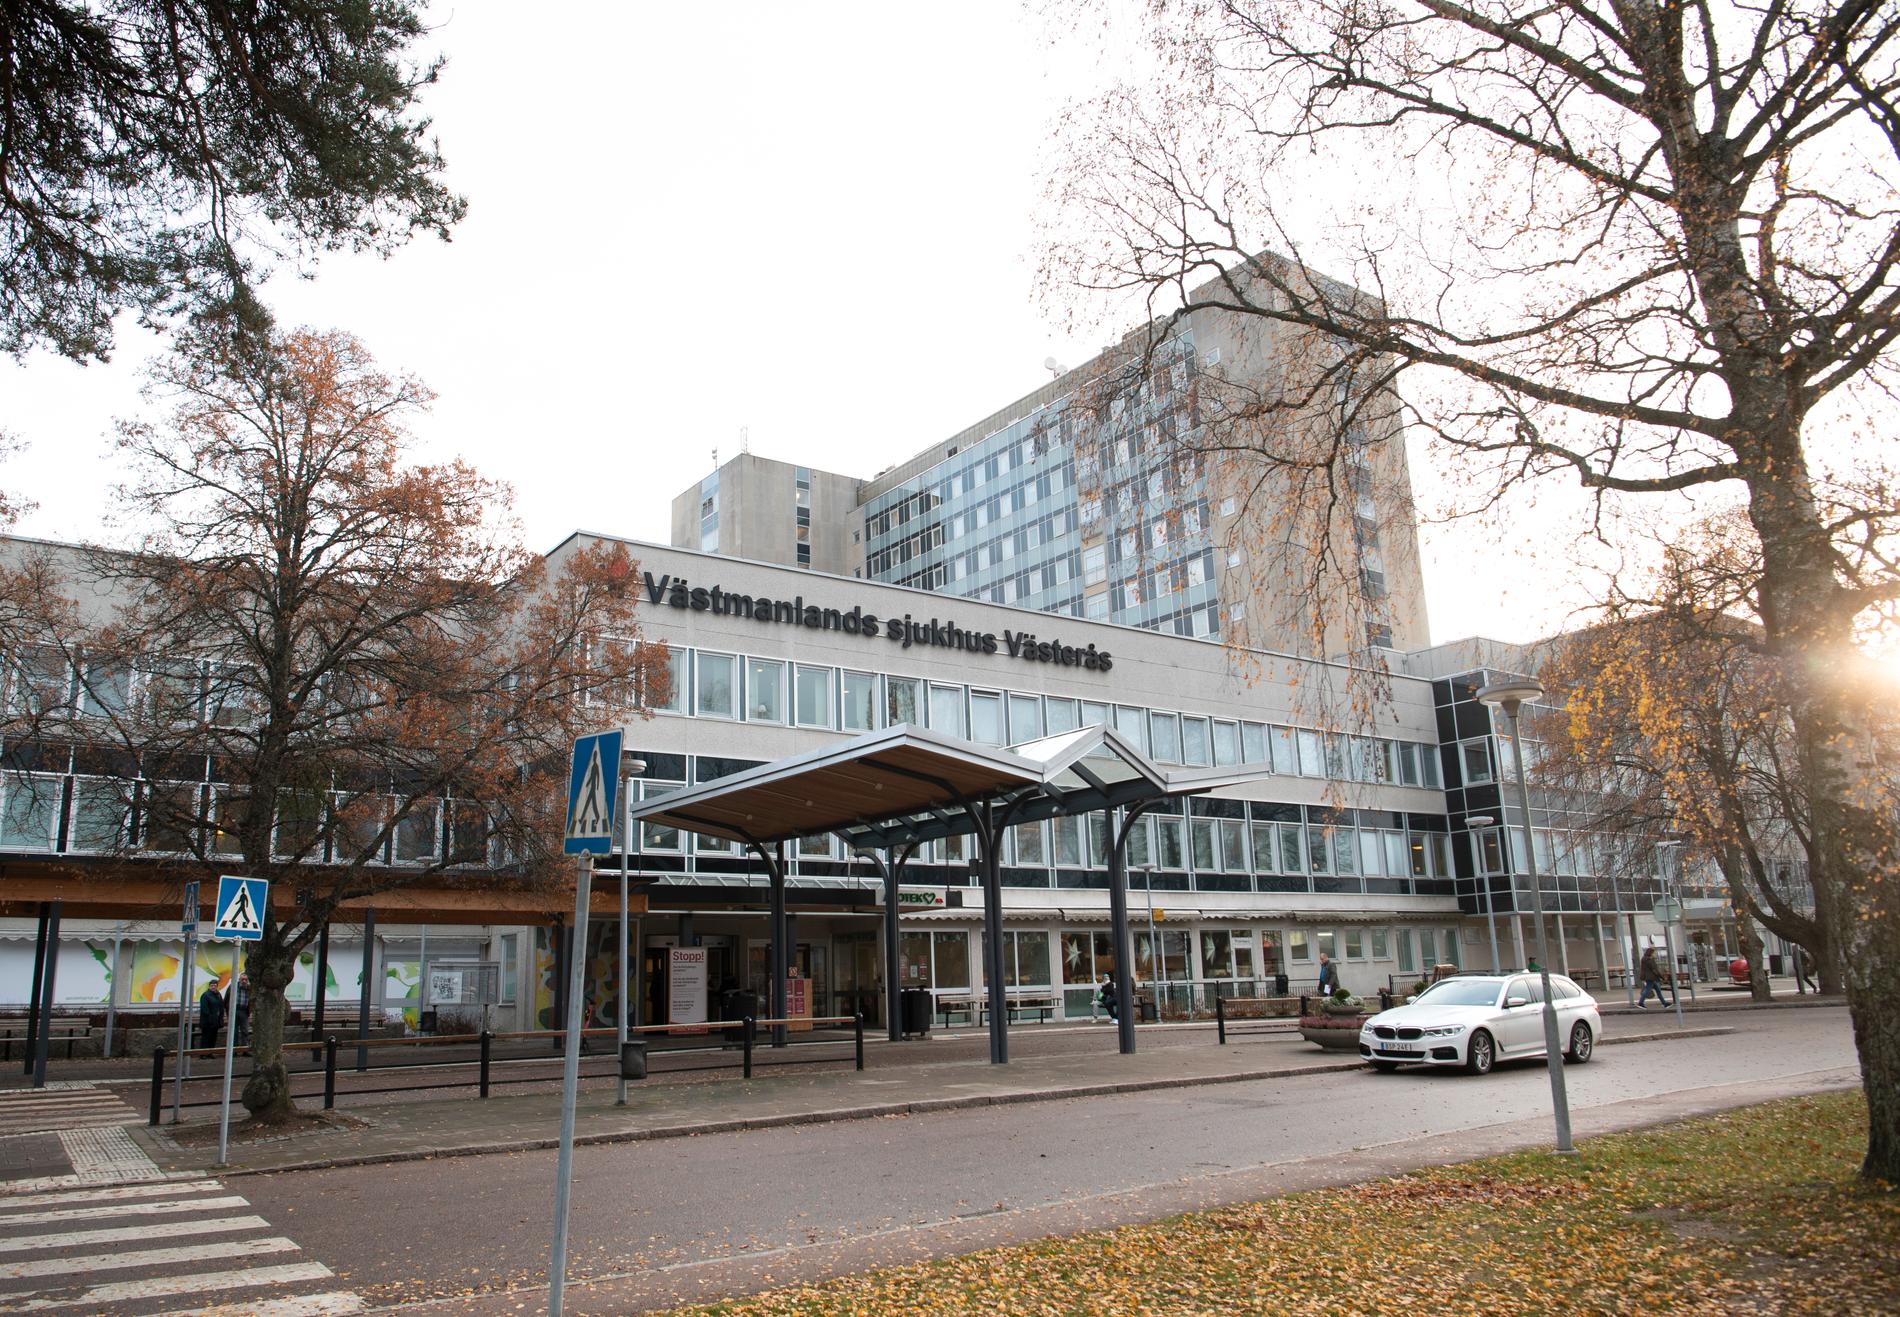 Västmanlands sjukhus i Västerås. 